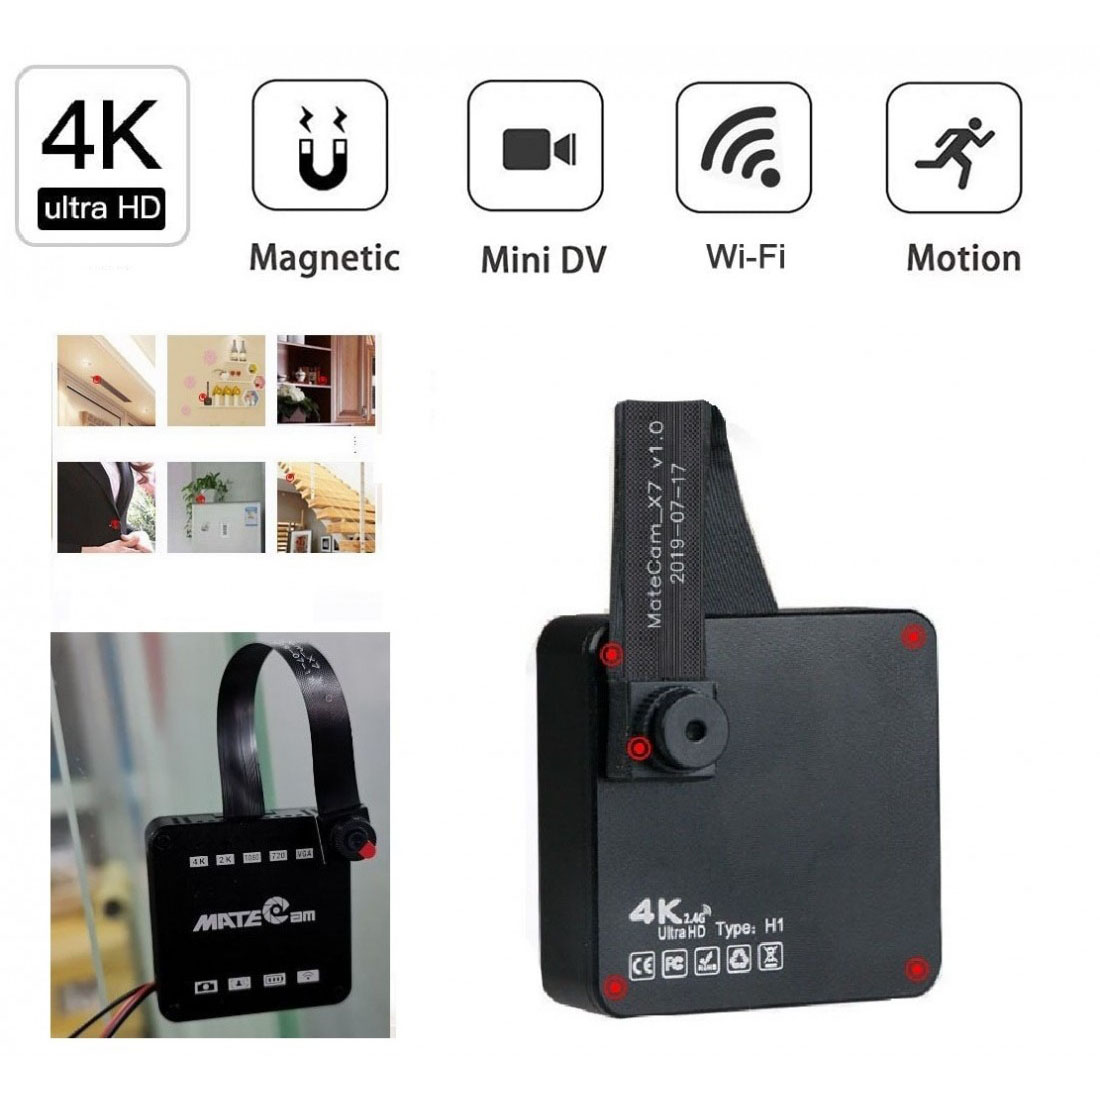 Máy ảnh gián điệp 4K không siêu HD Máy ảnh ẩn không dây có nam châm, Mini di động gia đình an ninh bằng pin được hỗ trợ bởi Nanny Cam, Máy quay video nhỏ / Kích hoạt chuyển động